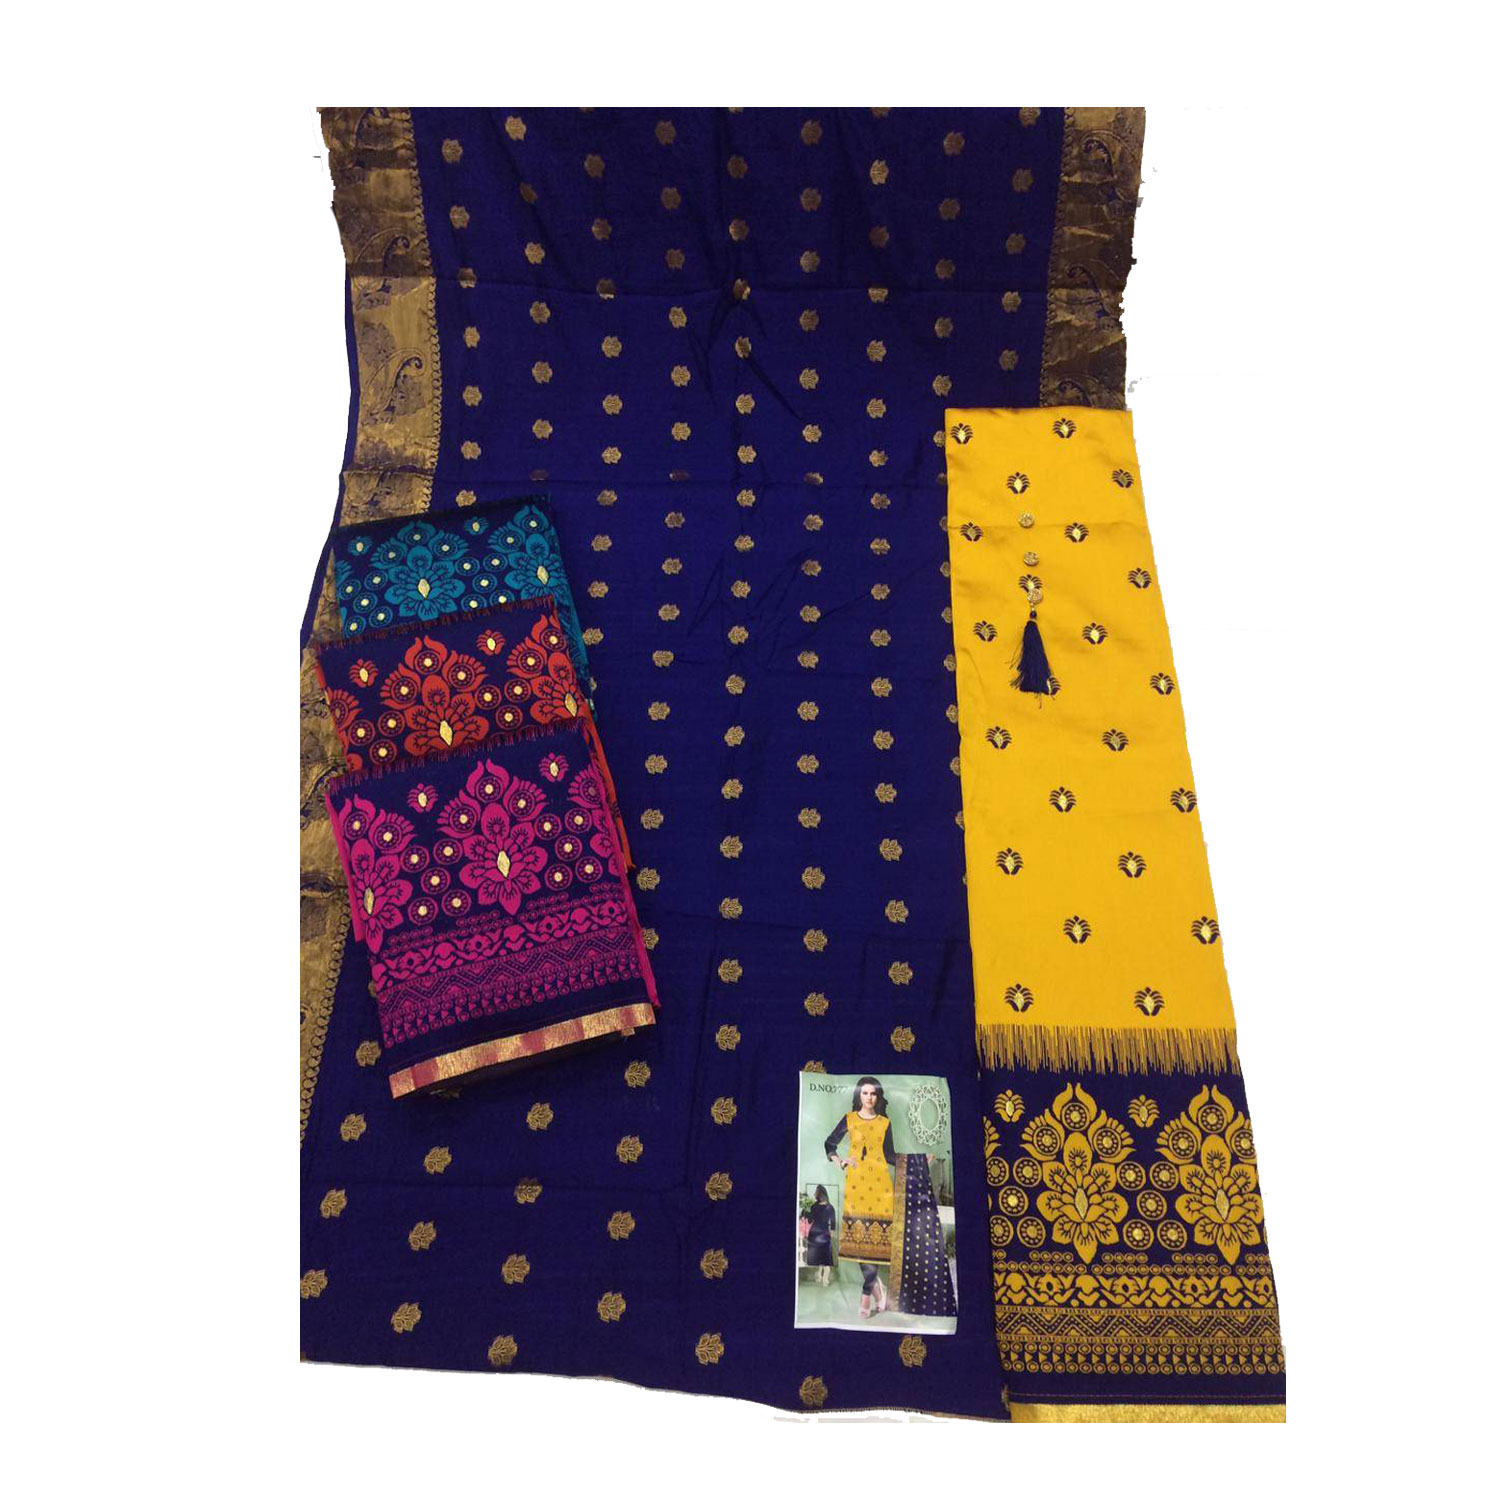 Women's Banarasi Jacquard Banarasi Work Suits & Dupatta | K-777 | Pack of 4